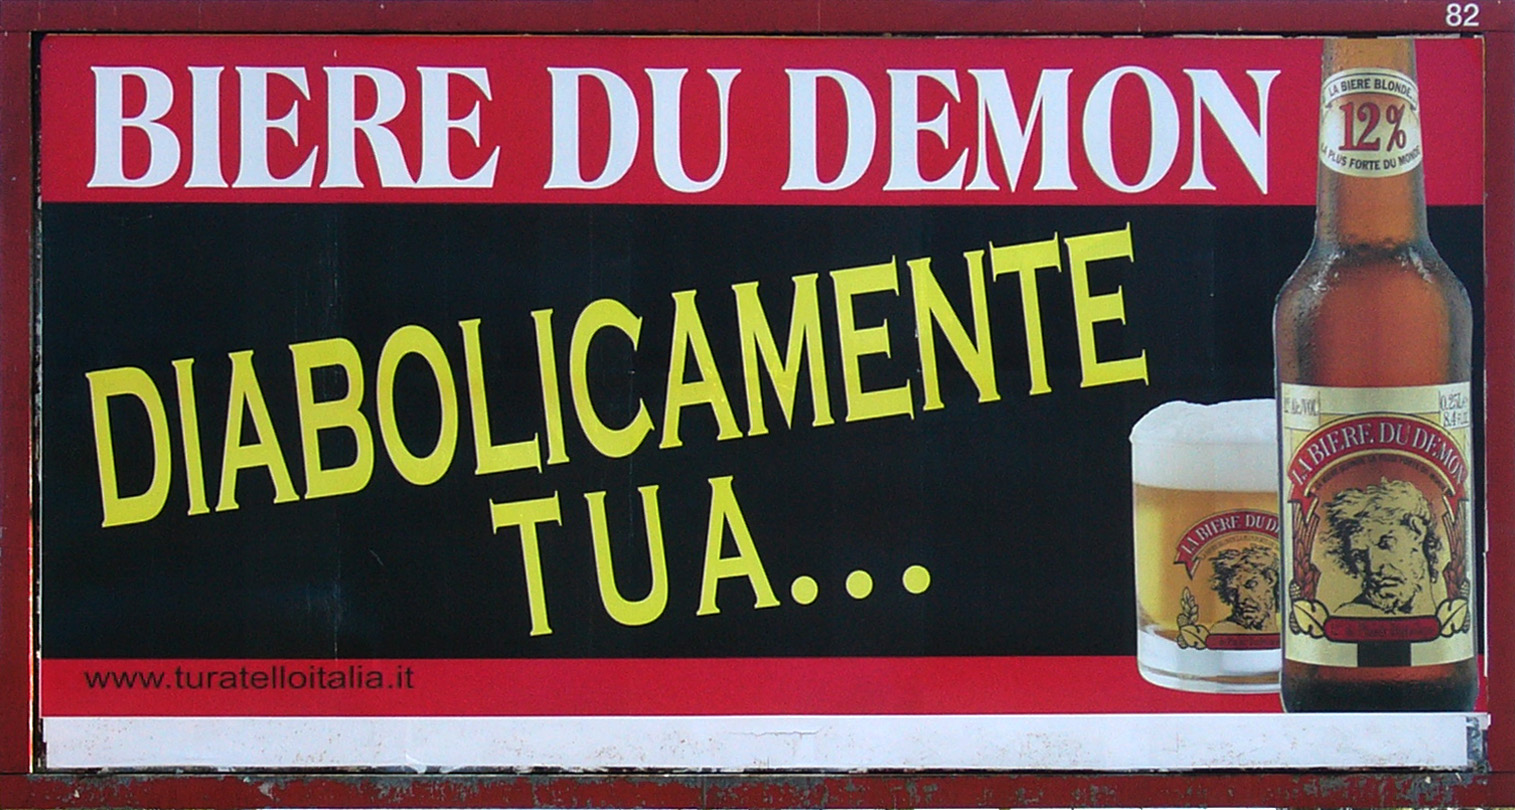 [Affissione+Biere+Du+Demon.jpg]